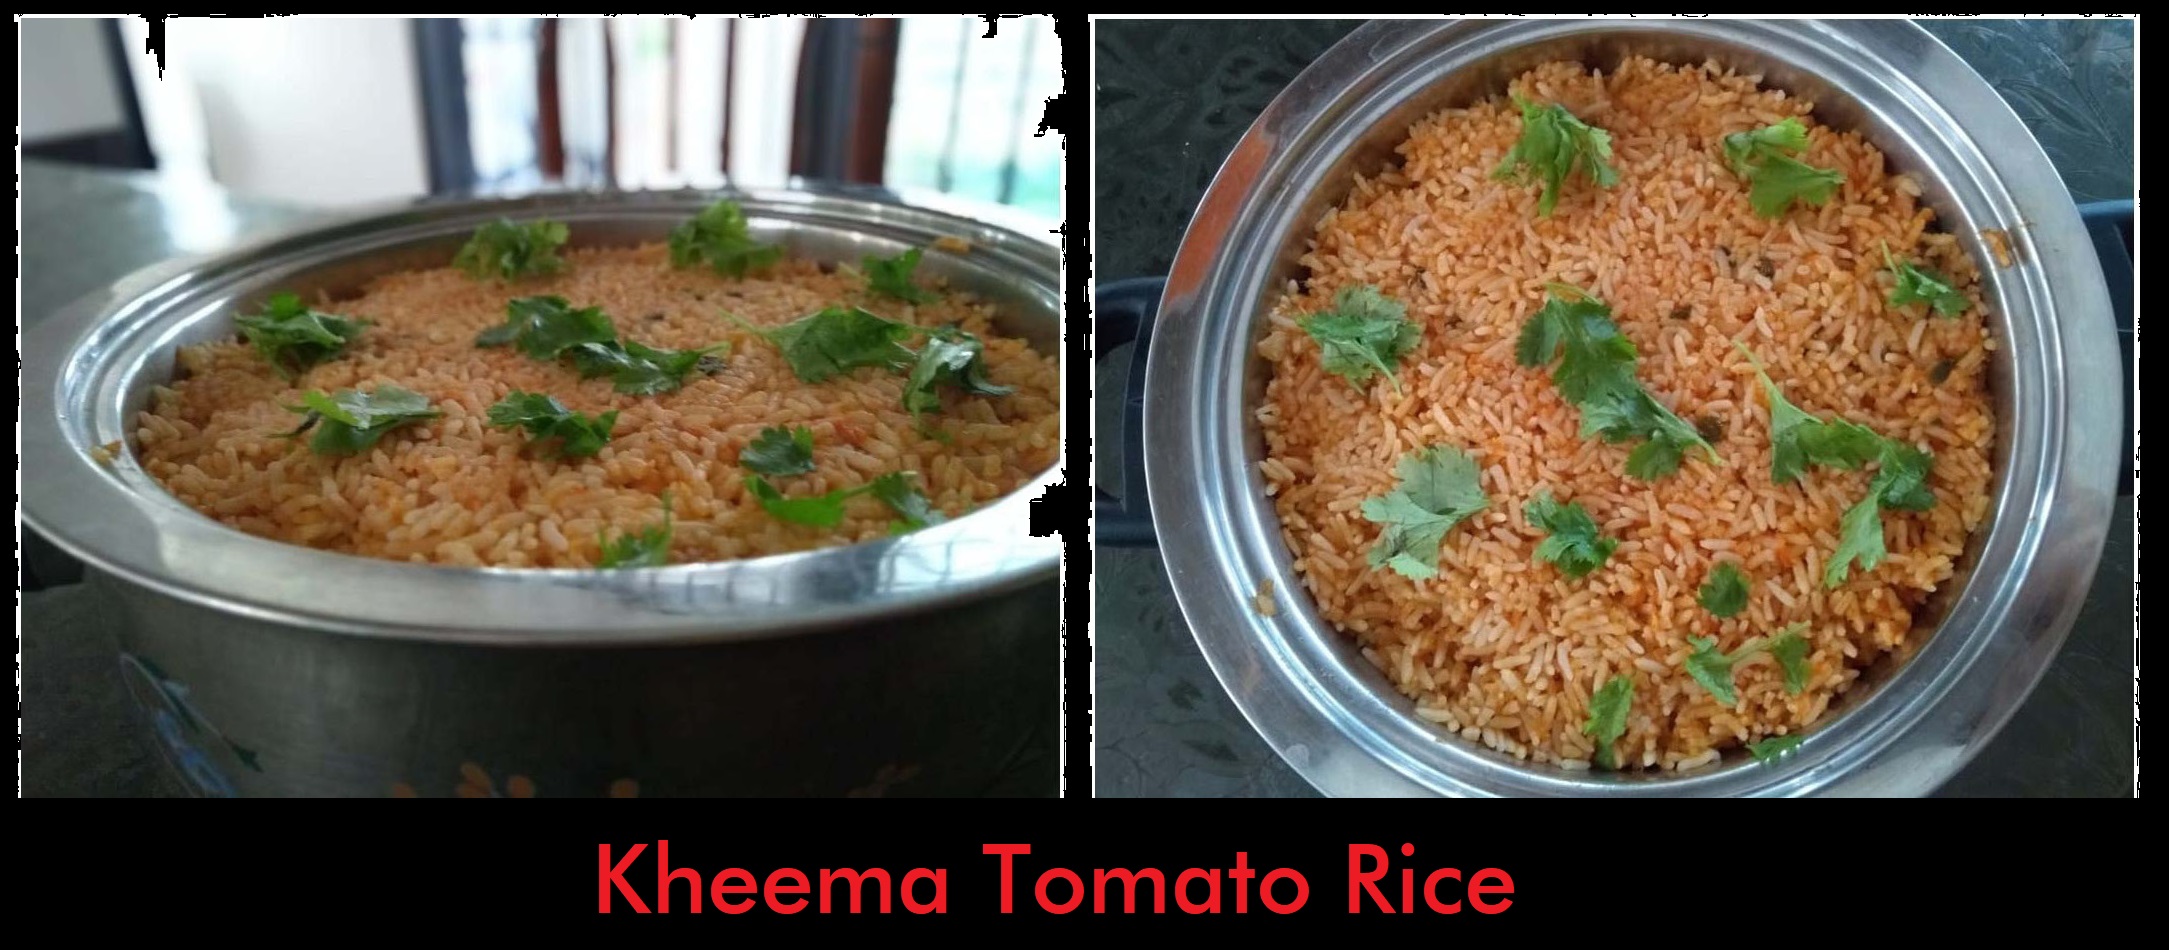 Kheema Tomato Rice